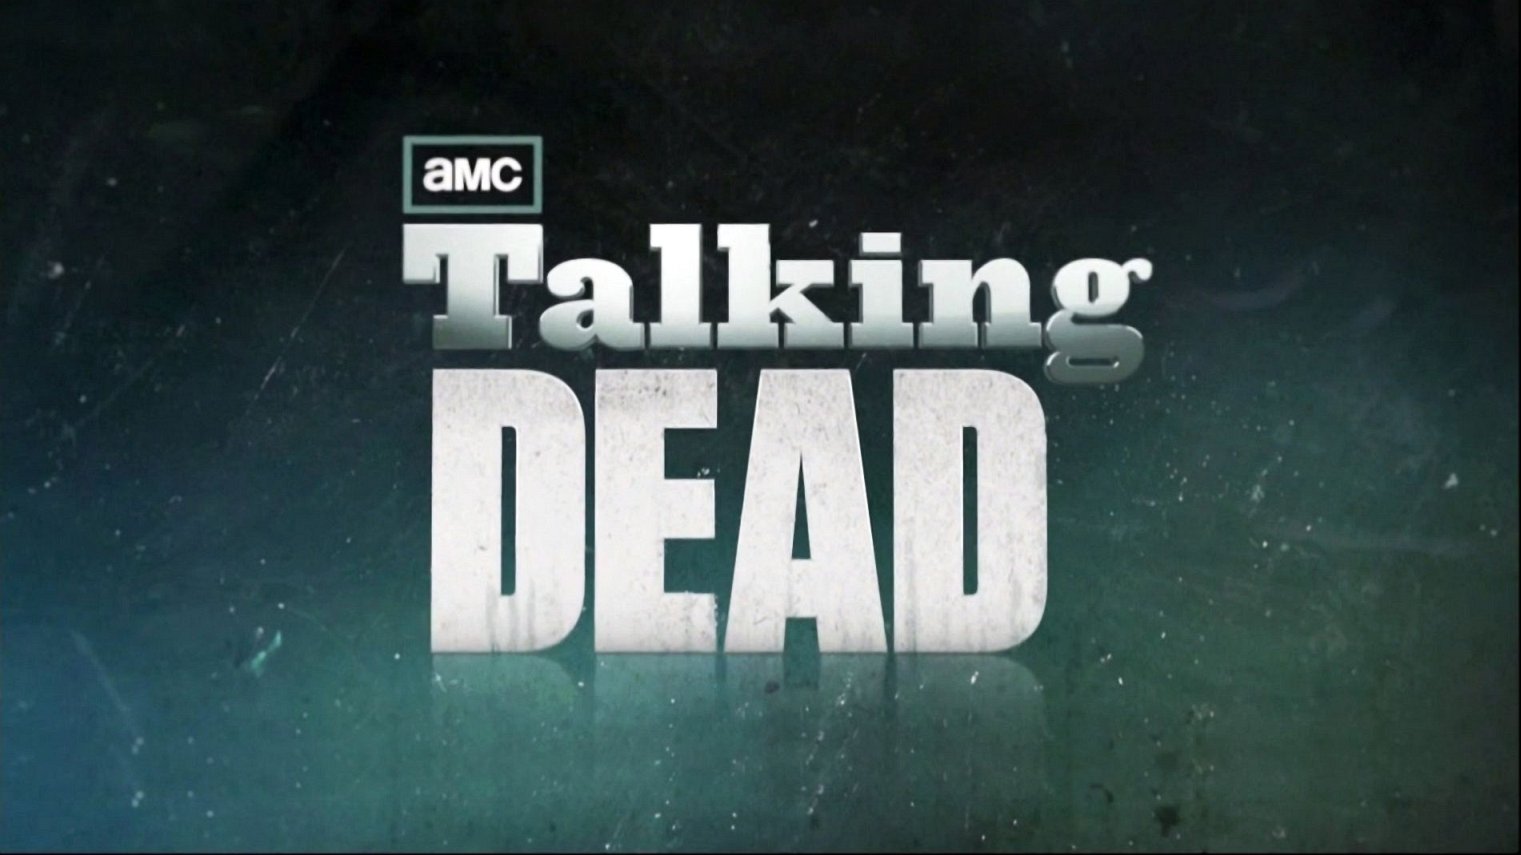 cast of Talking Dead season 6